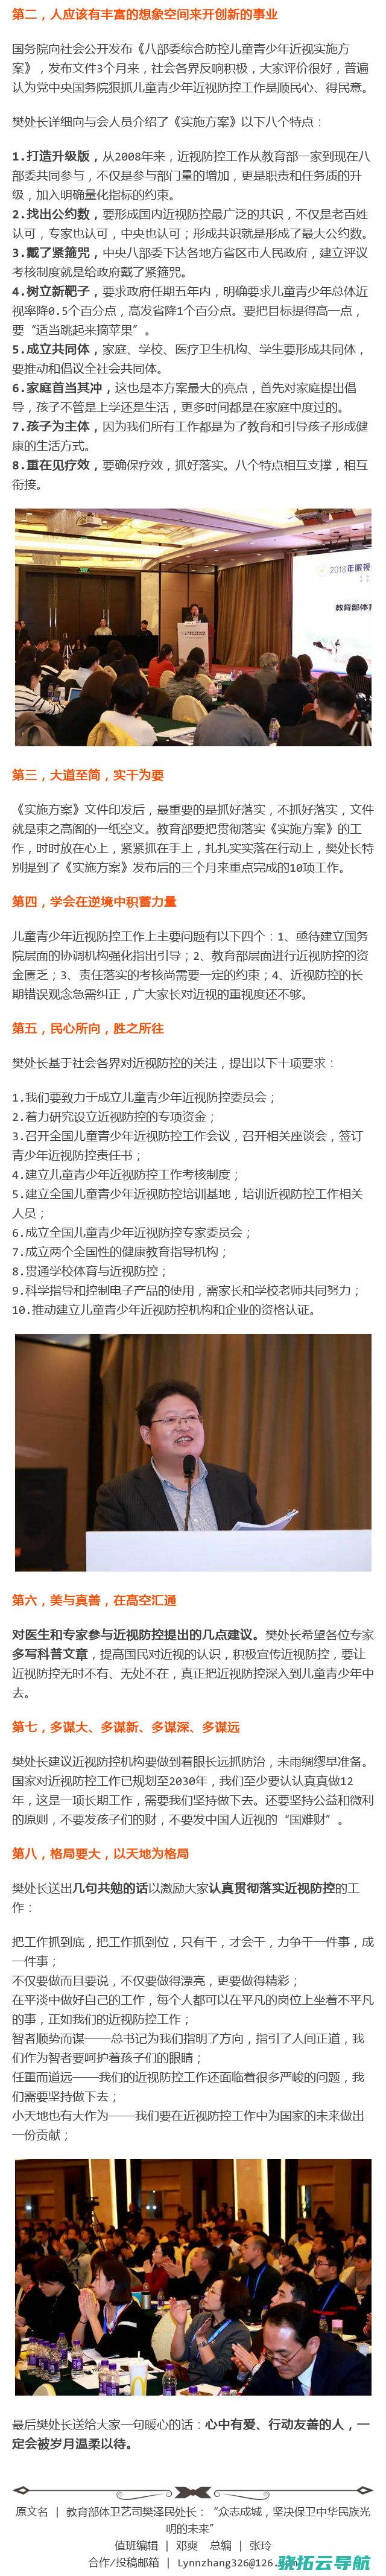 教育部体卫艺司原司长王登峰案一审闭庭 被控贪污行贿超5600万元